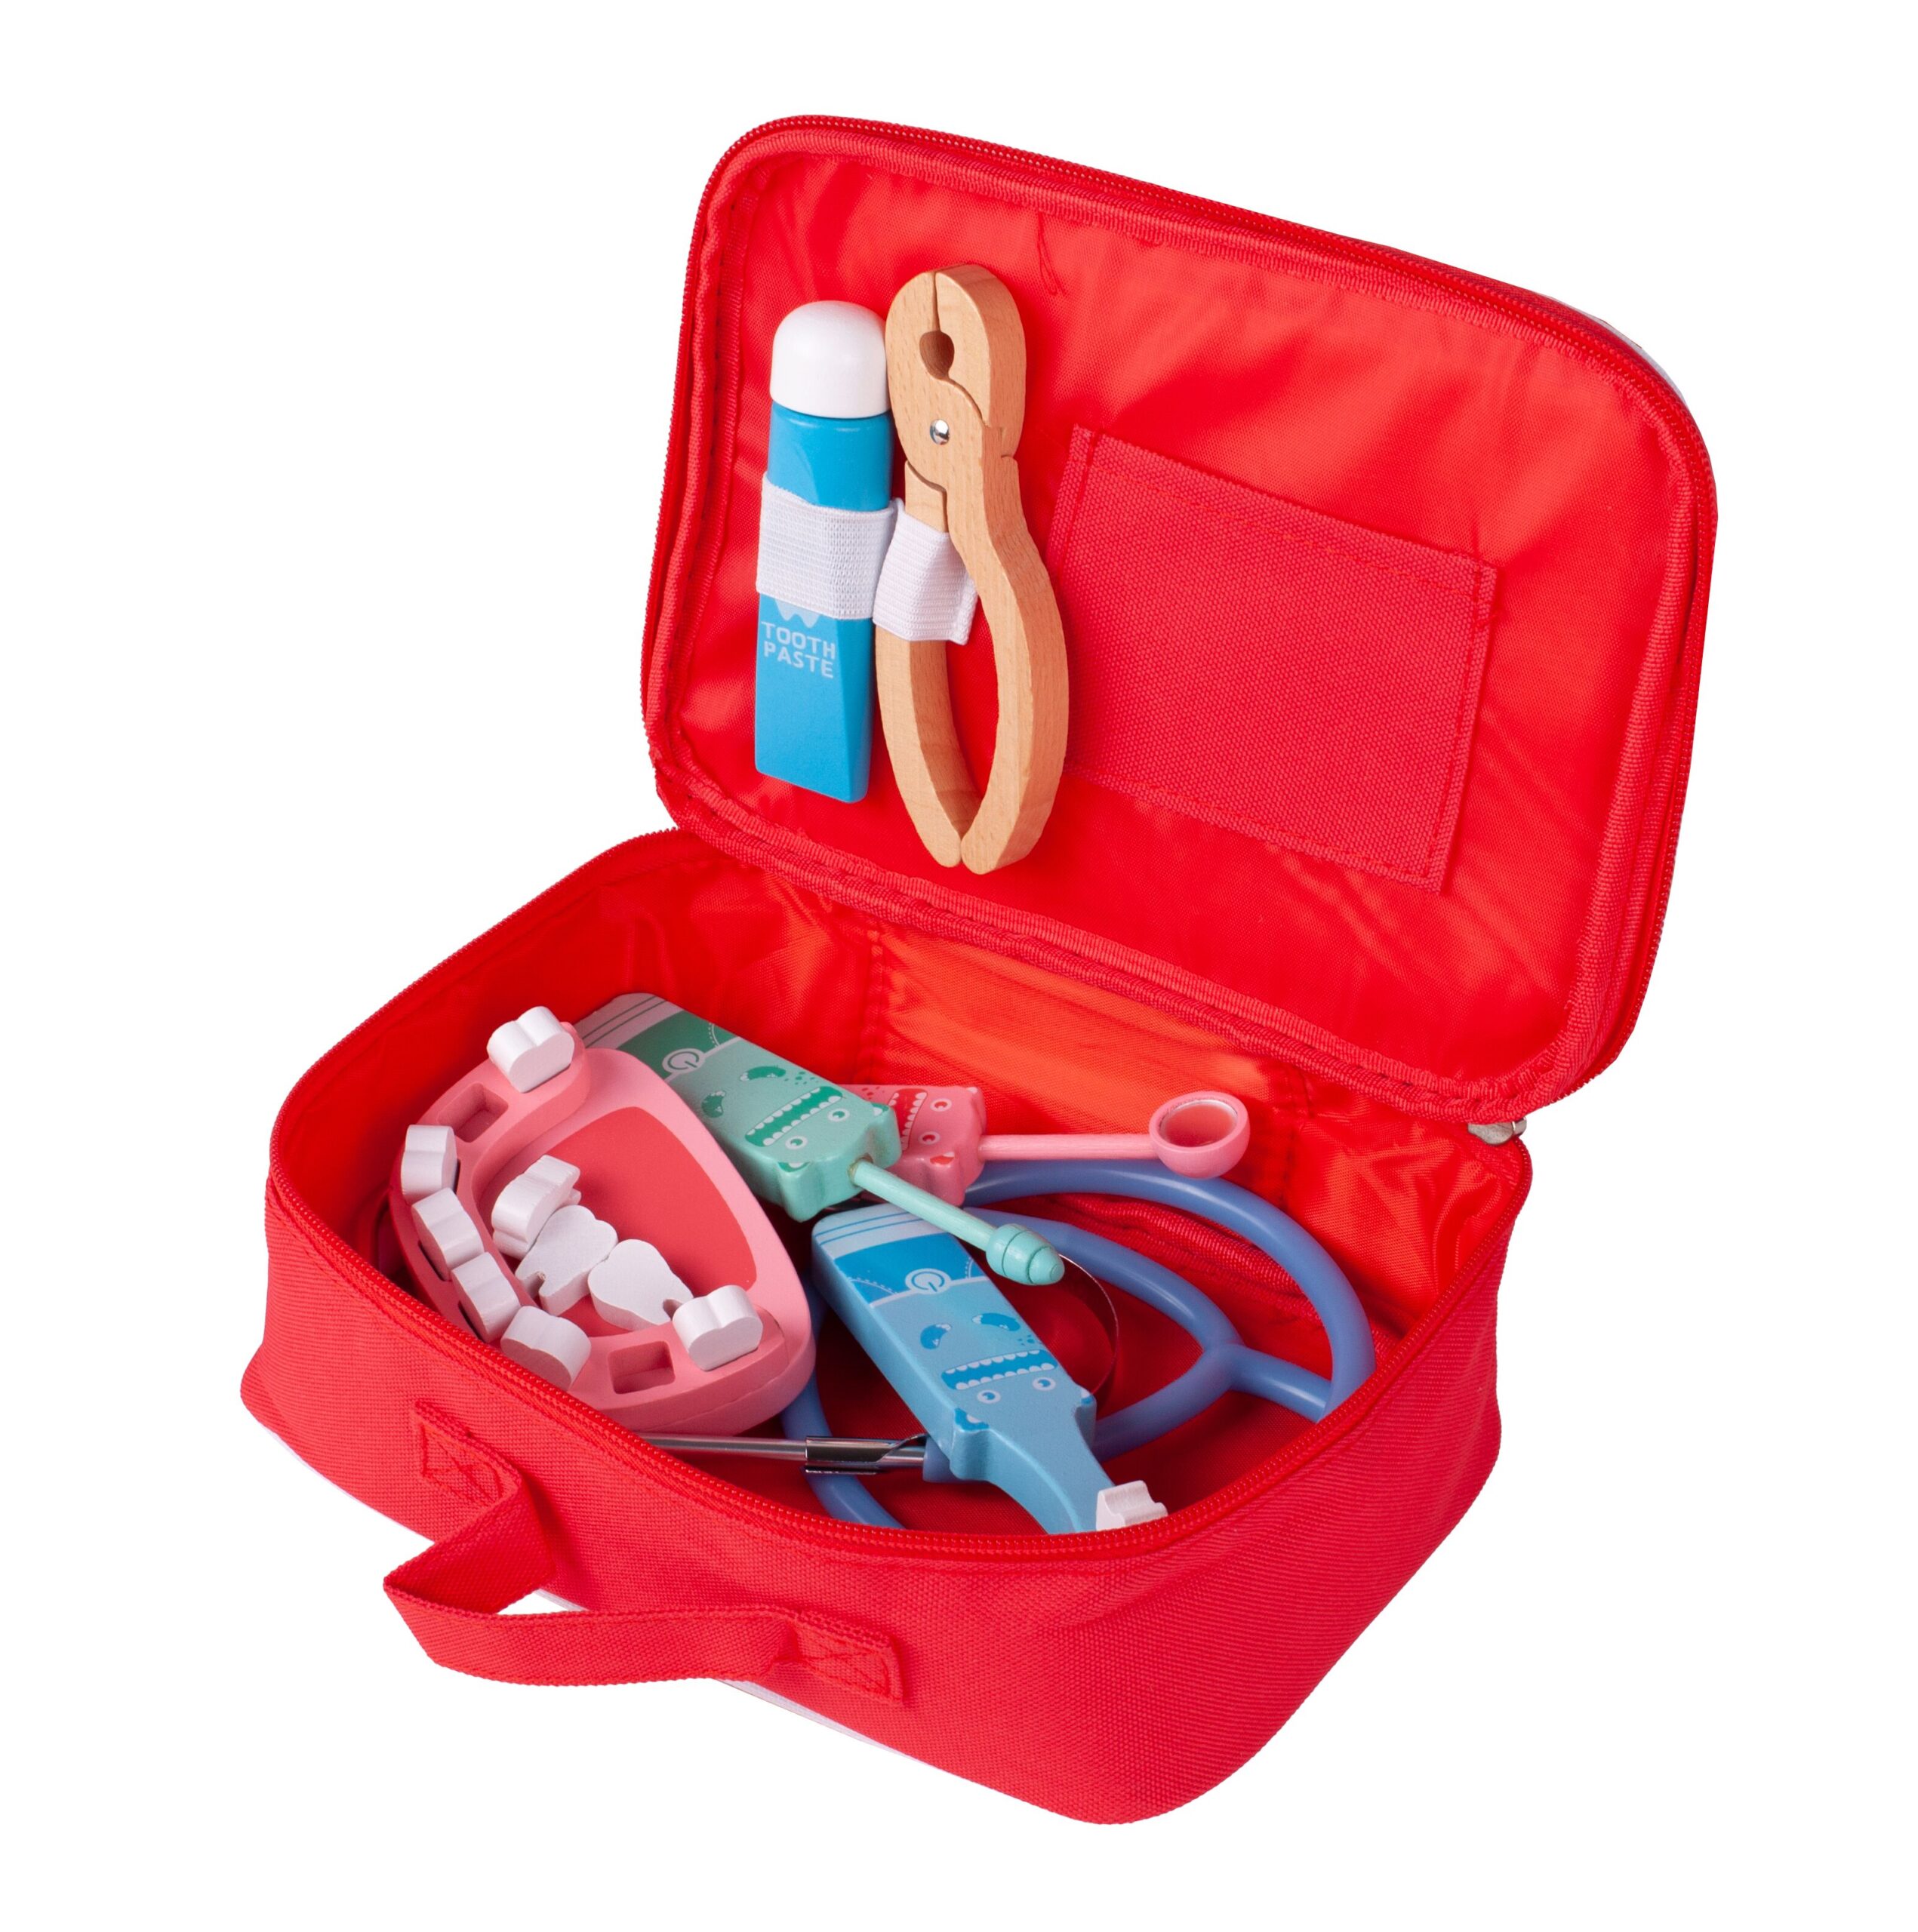 Trusa dentist din lemn pentru copii  ISP „Dentist Kit Red”, Stetoscop, Pasta de dinti, Periuta, Cleste 10 piese, Geanta depozitare